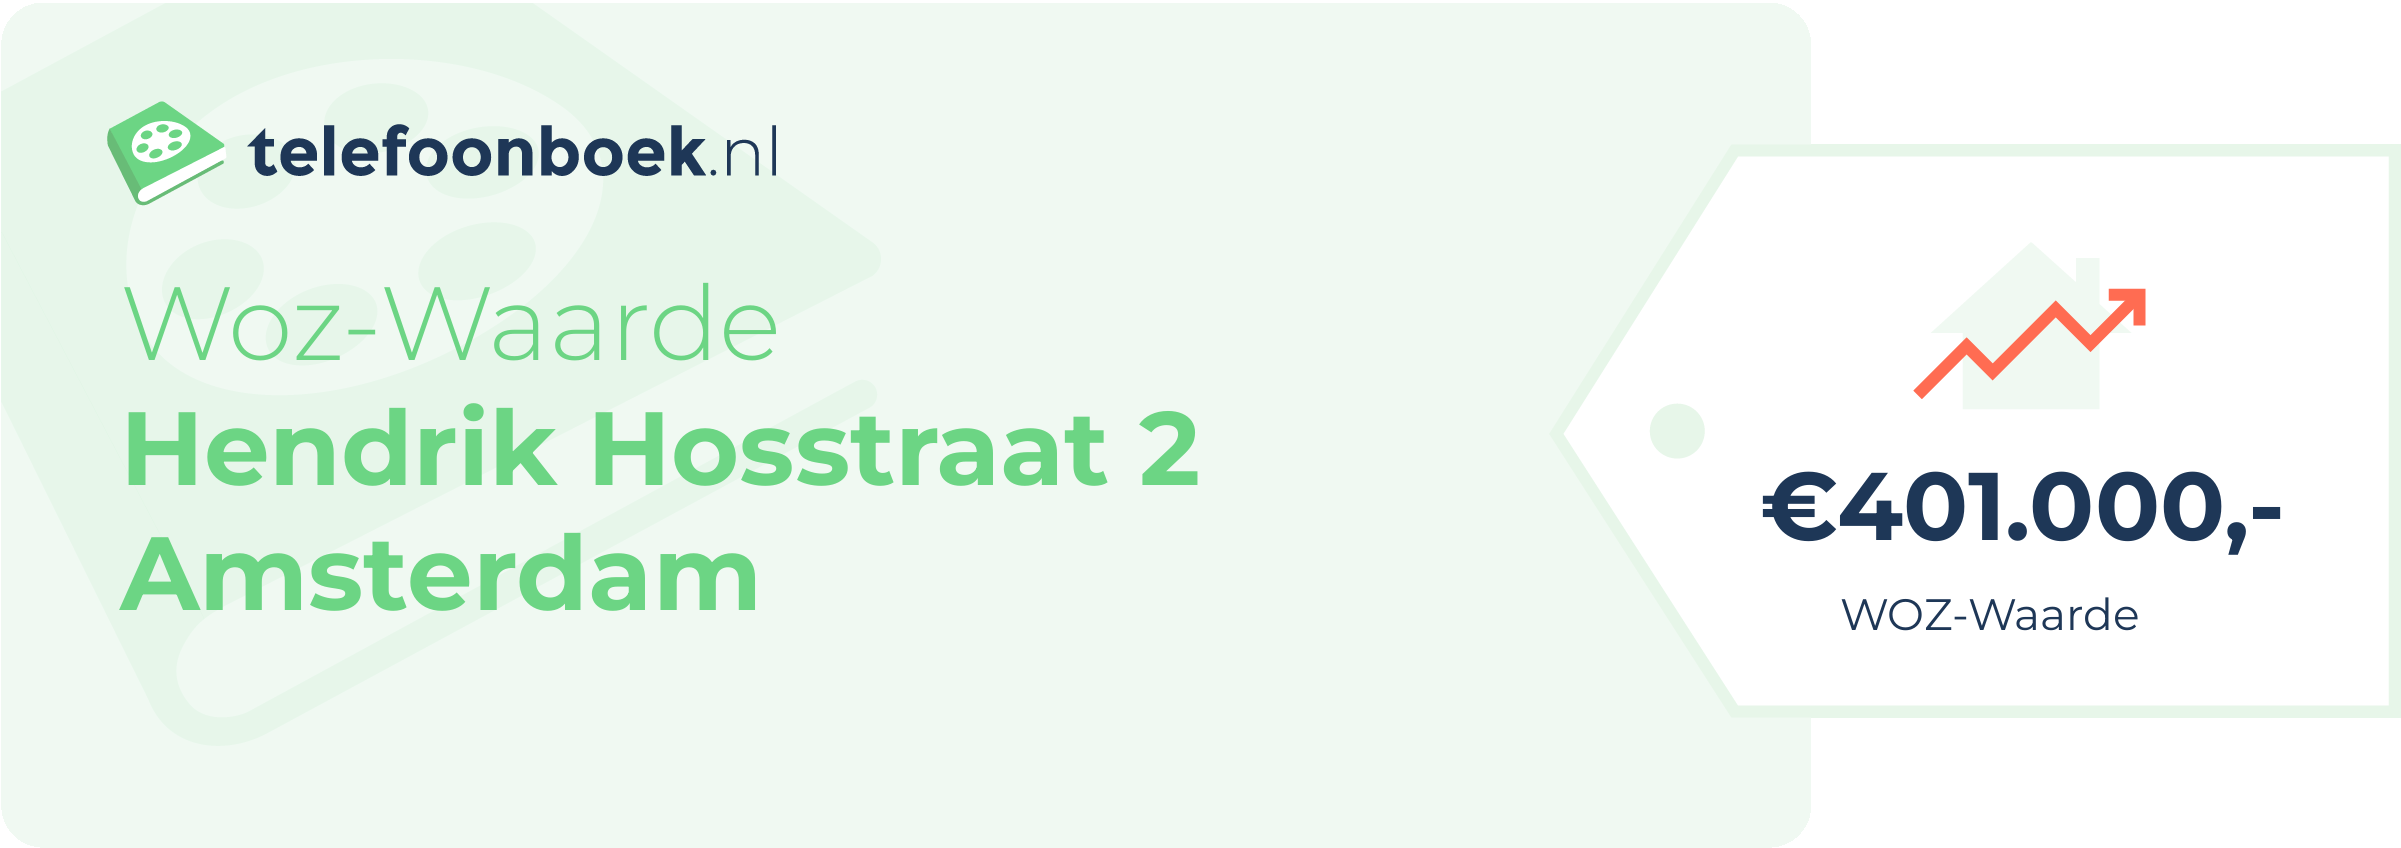 WOZ-waarde Hendrik Hosstraat 2 Amsterdam